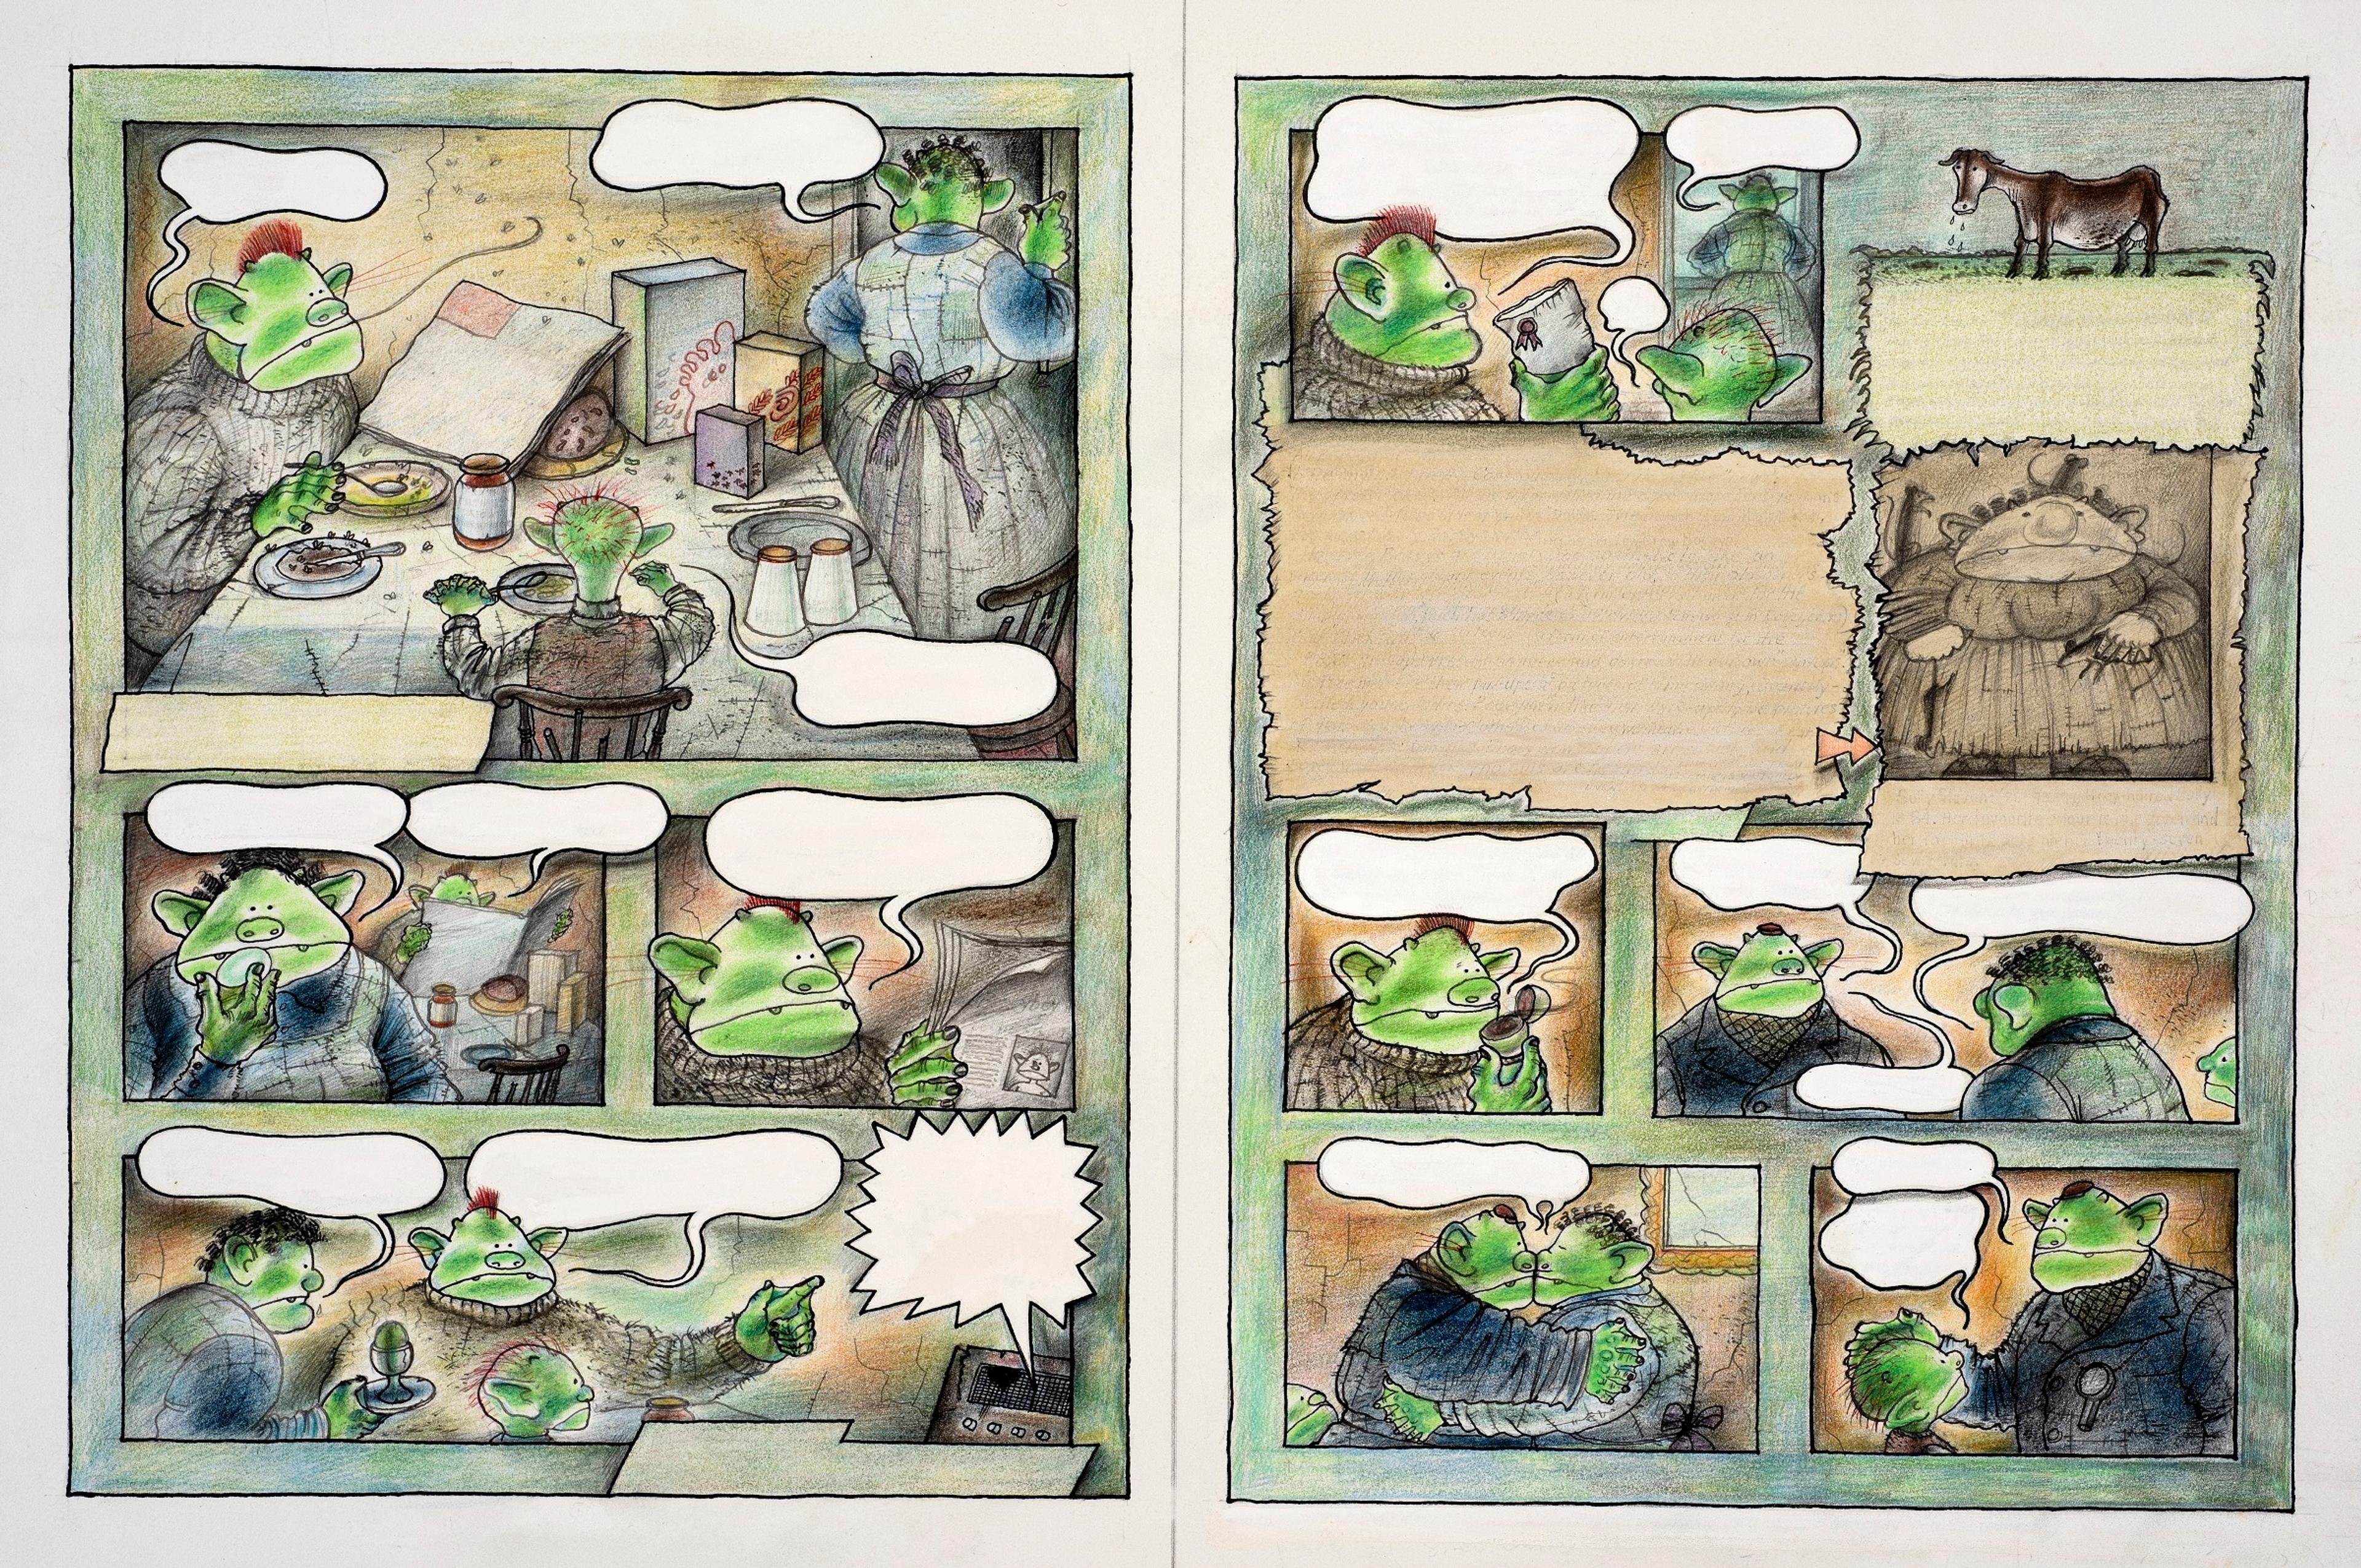 Illustration of Bogey family eating breakfast in 12 comic panels